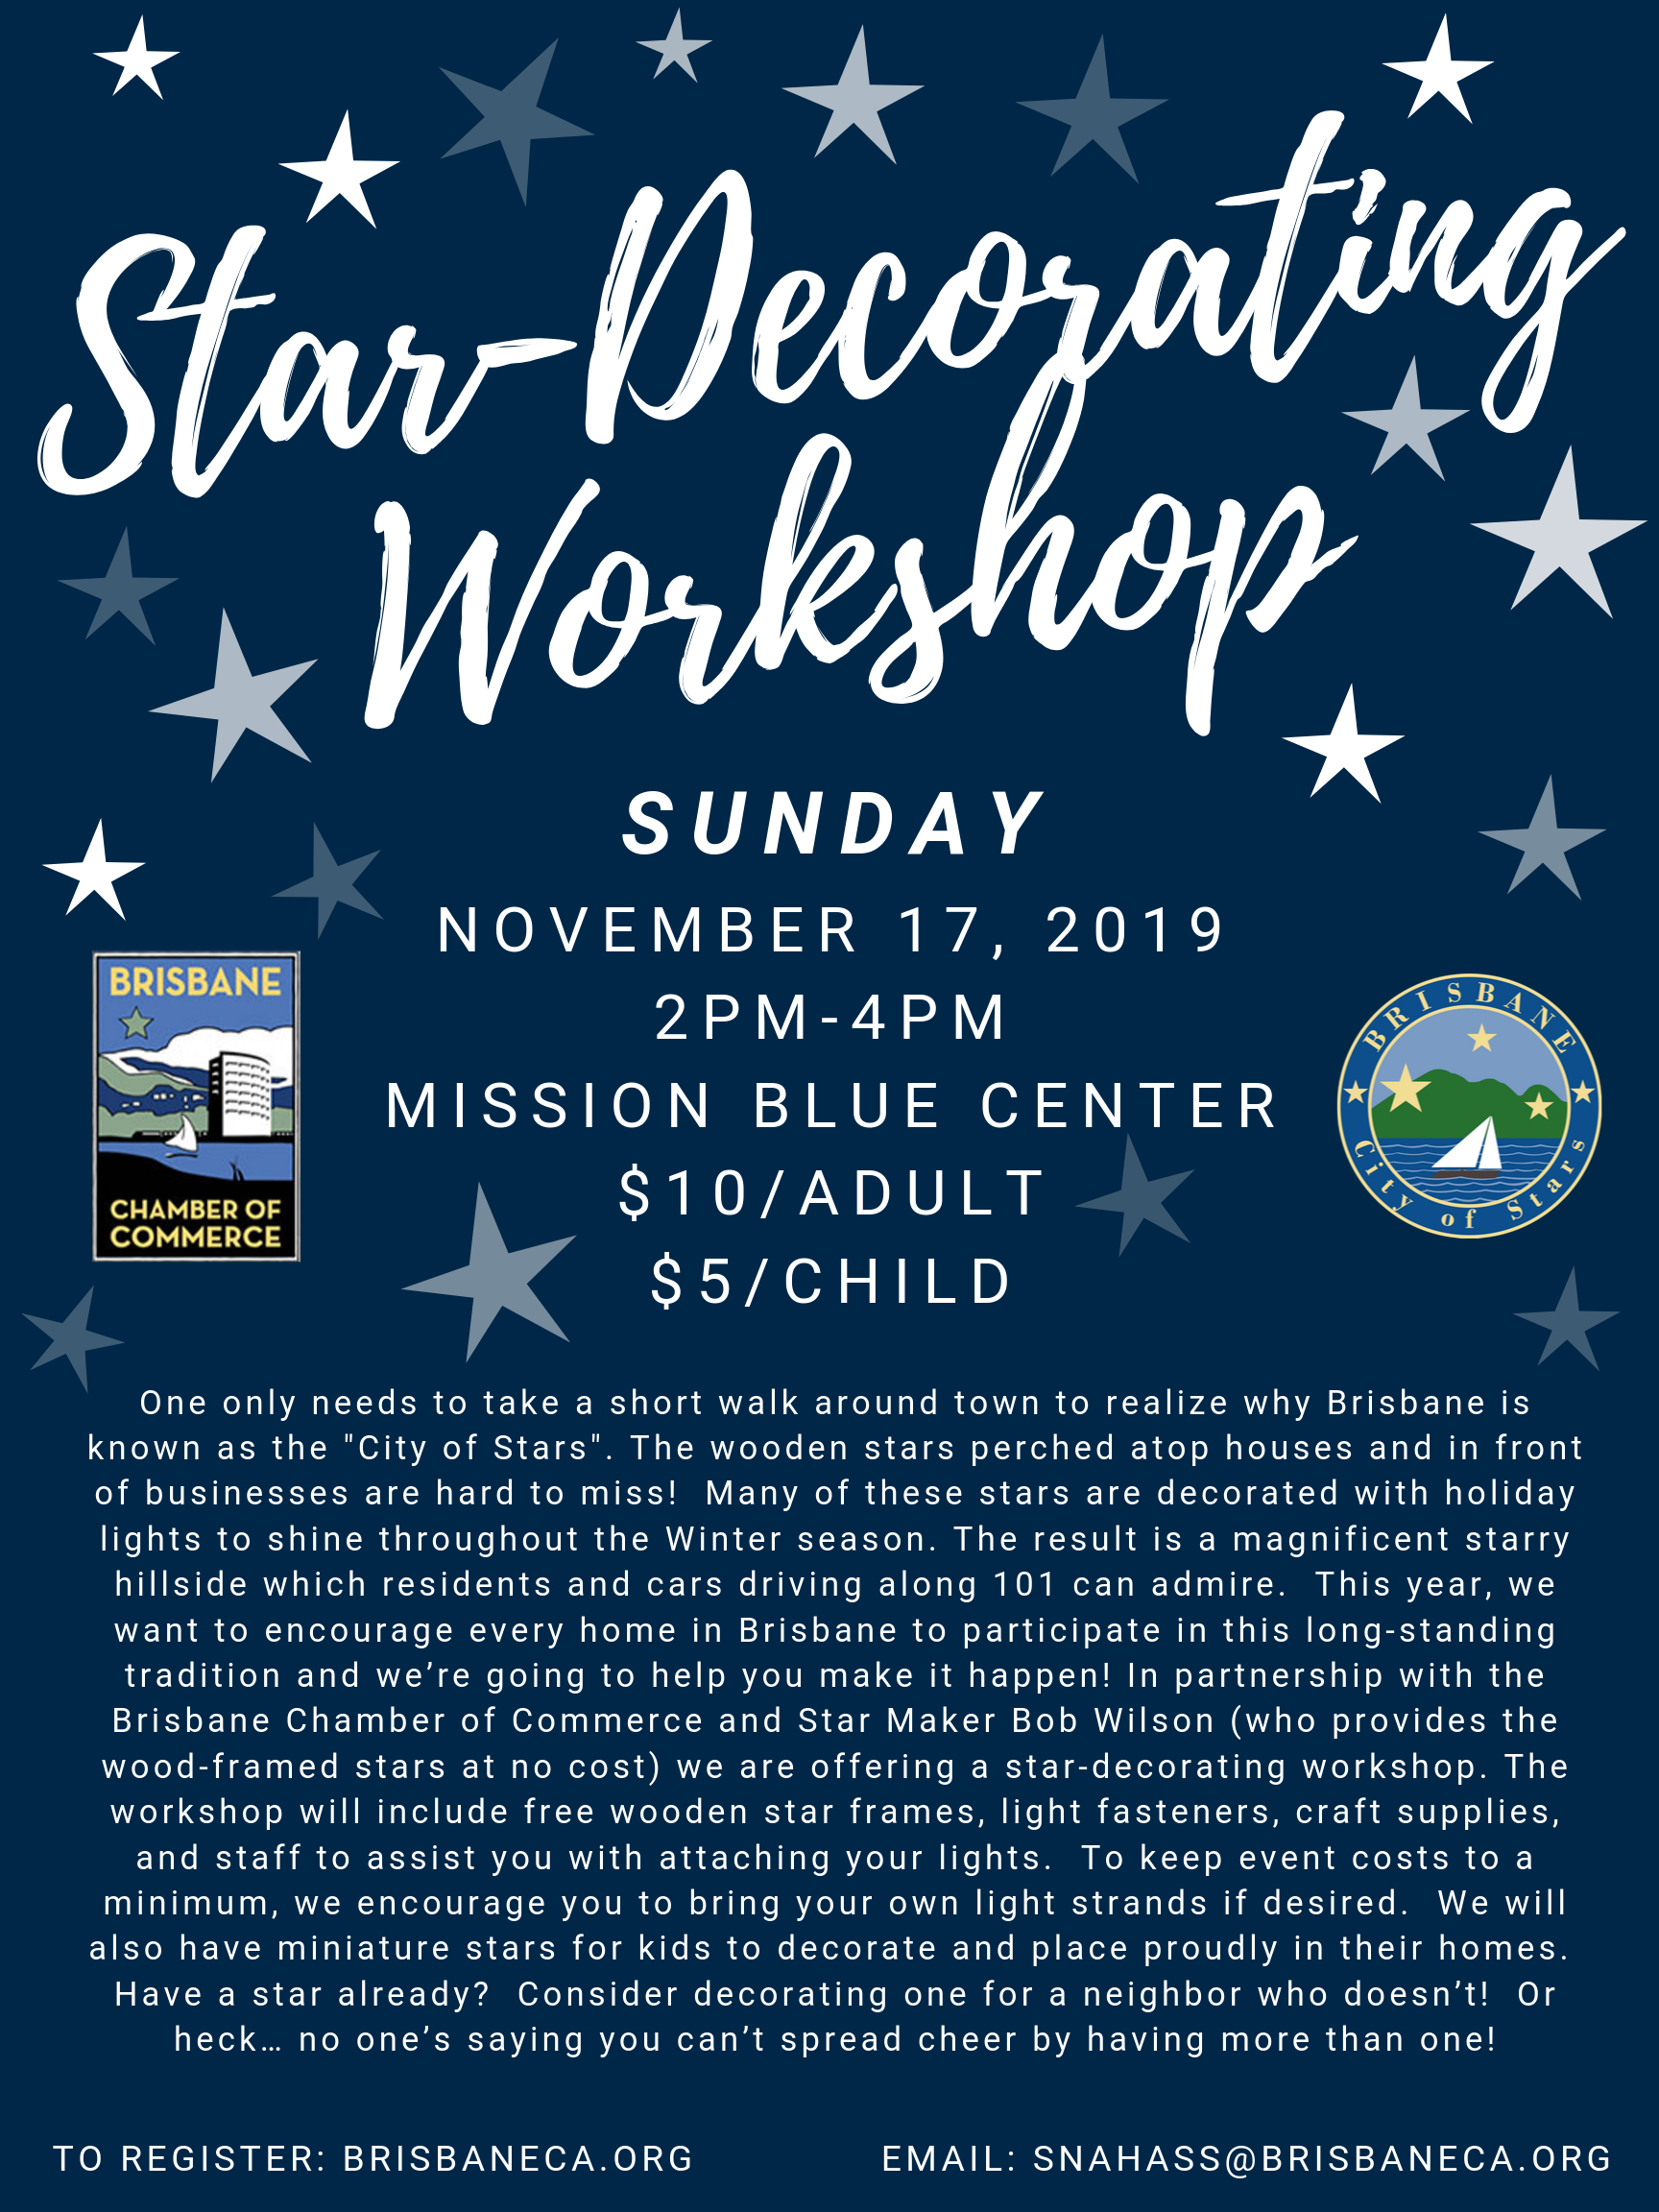 Star Decorating Workshop